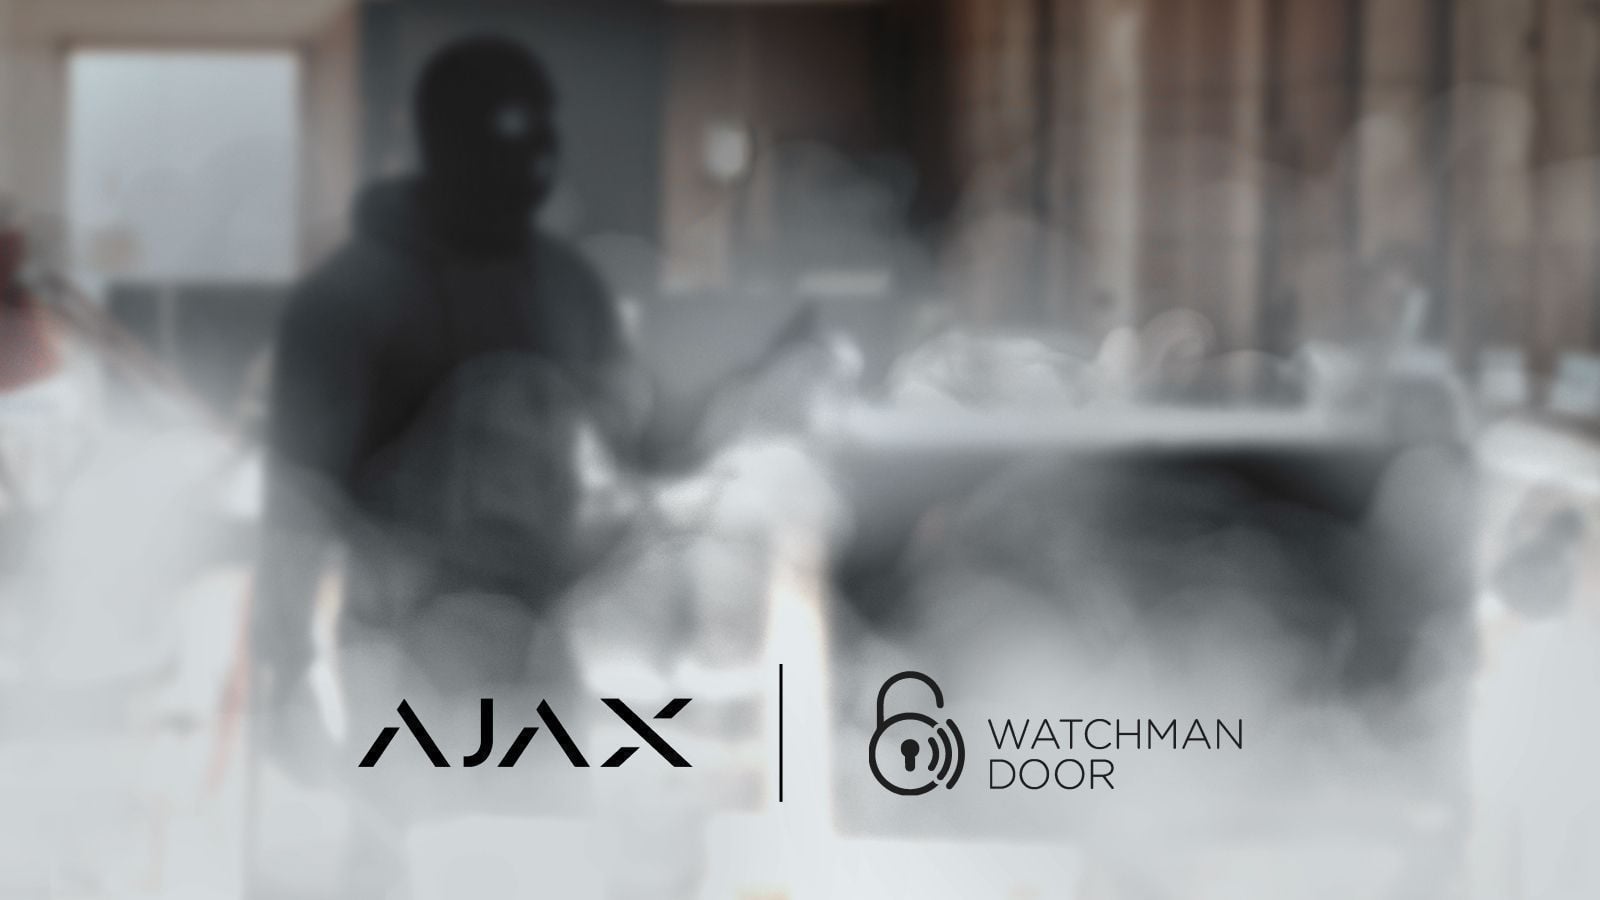 Ajax Systems geht eine Partnerschaft mit Watchman Door ein, um die Sicherheit von Wohn- und Bürogebäuden zu verbessern